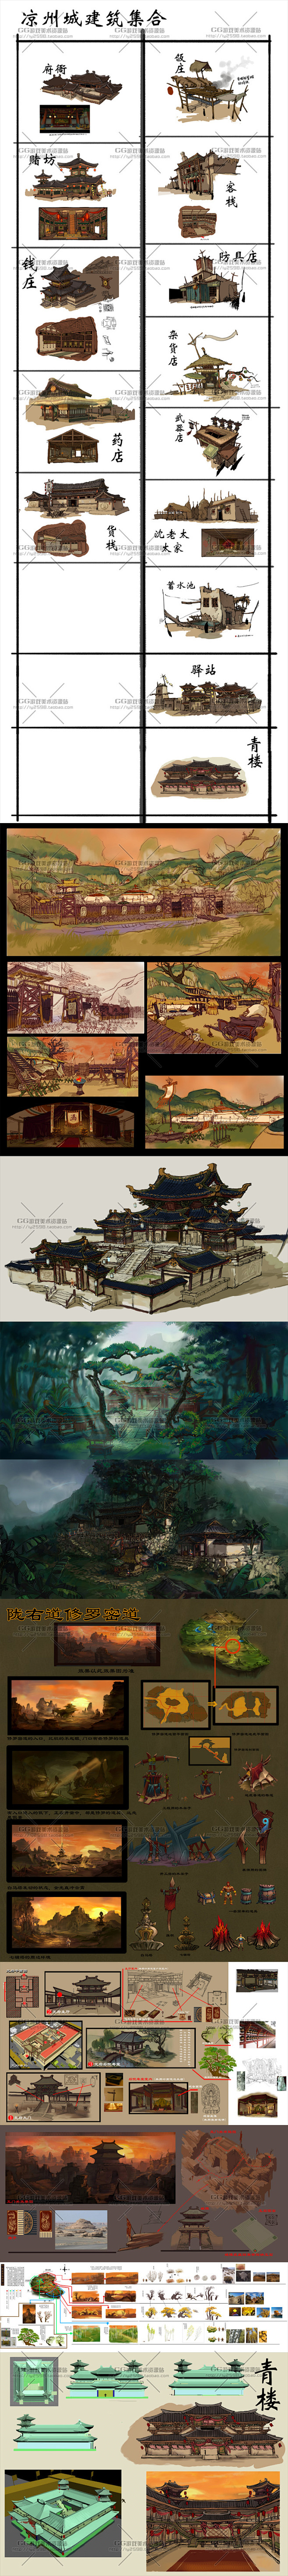 中国古代建筑场景概念设定 游戏公司原稿资...